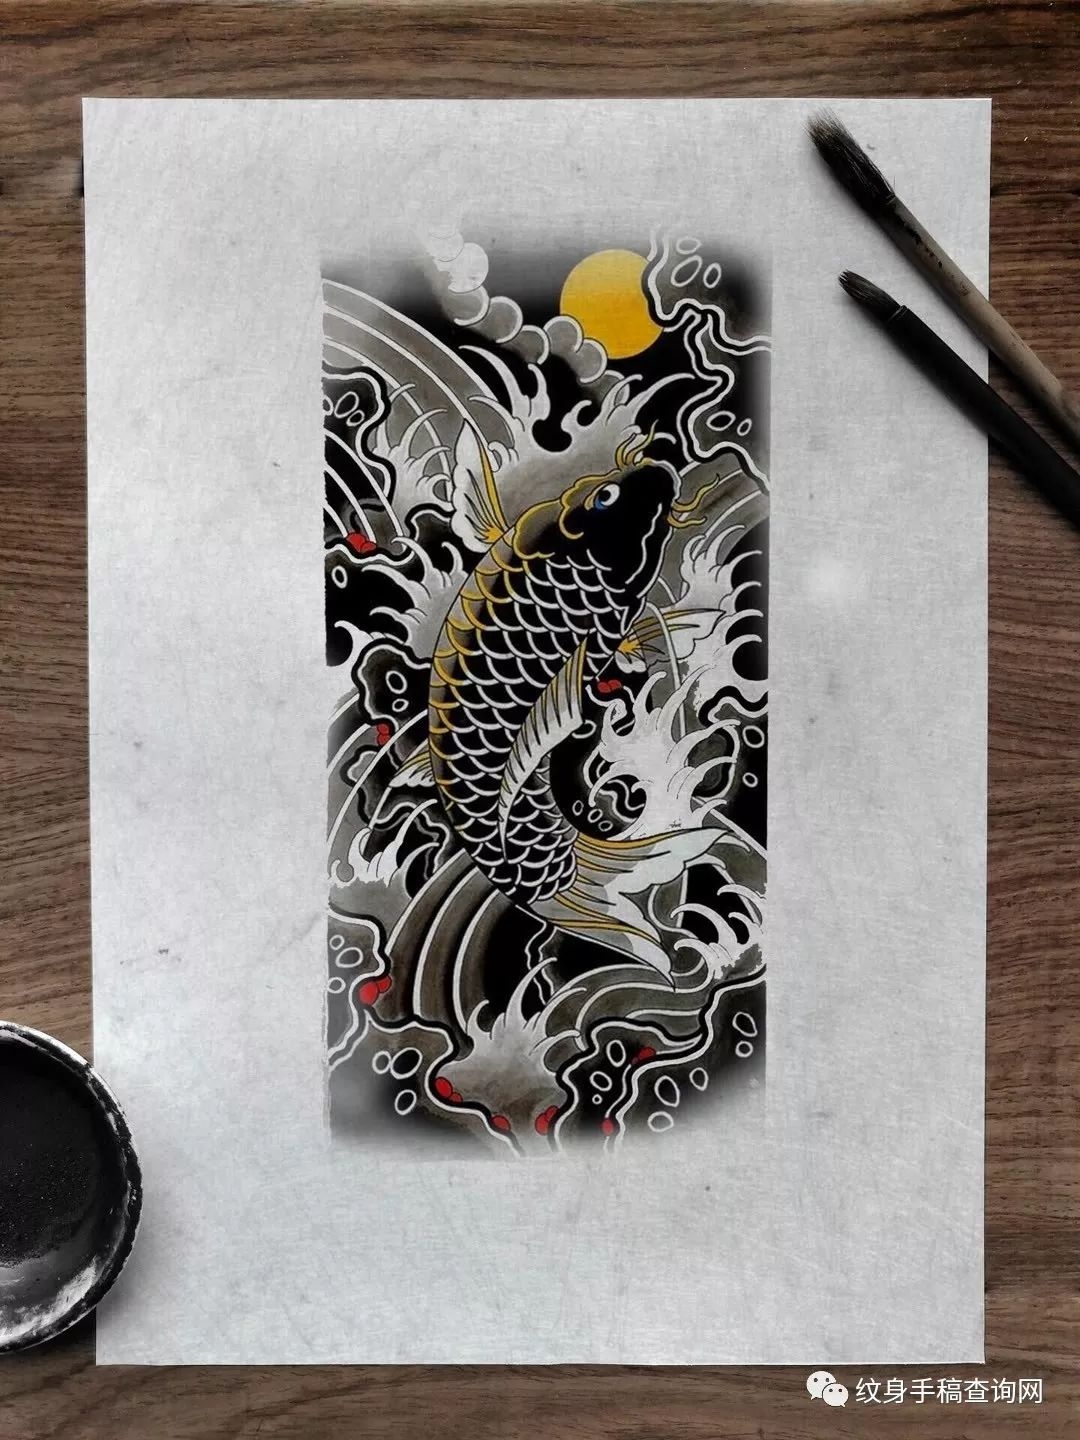 分享一组日式鲤鱼水浪纹身手稿图片大全集(多图精致)